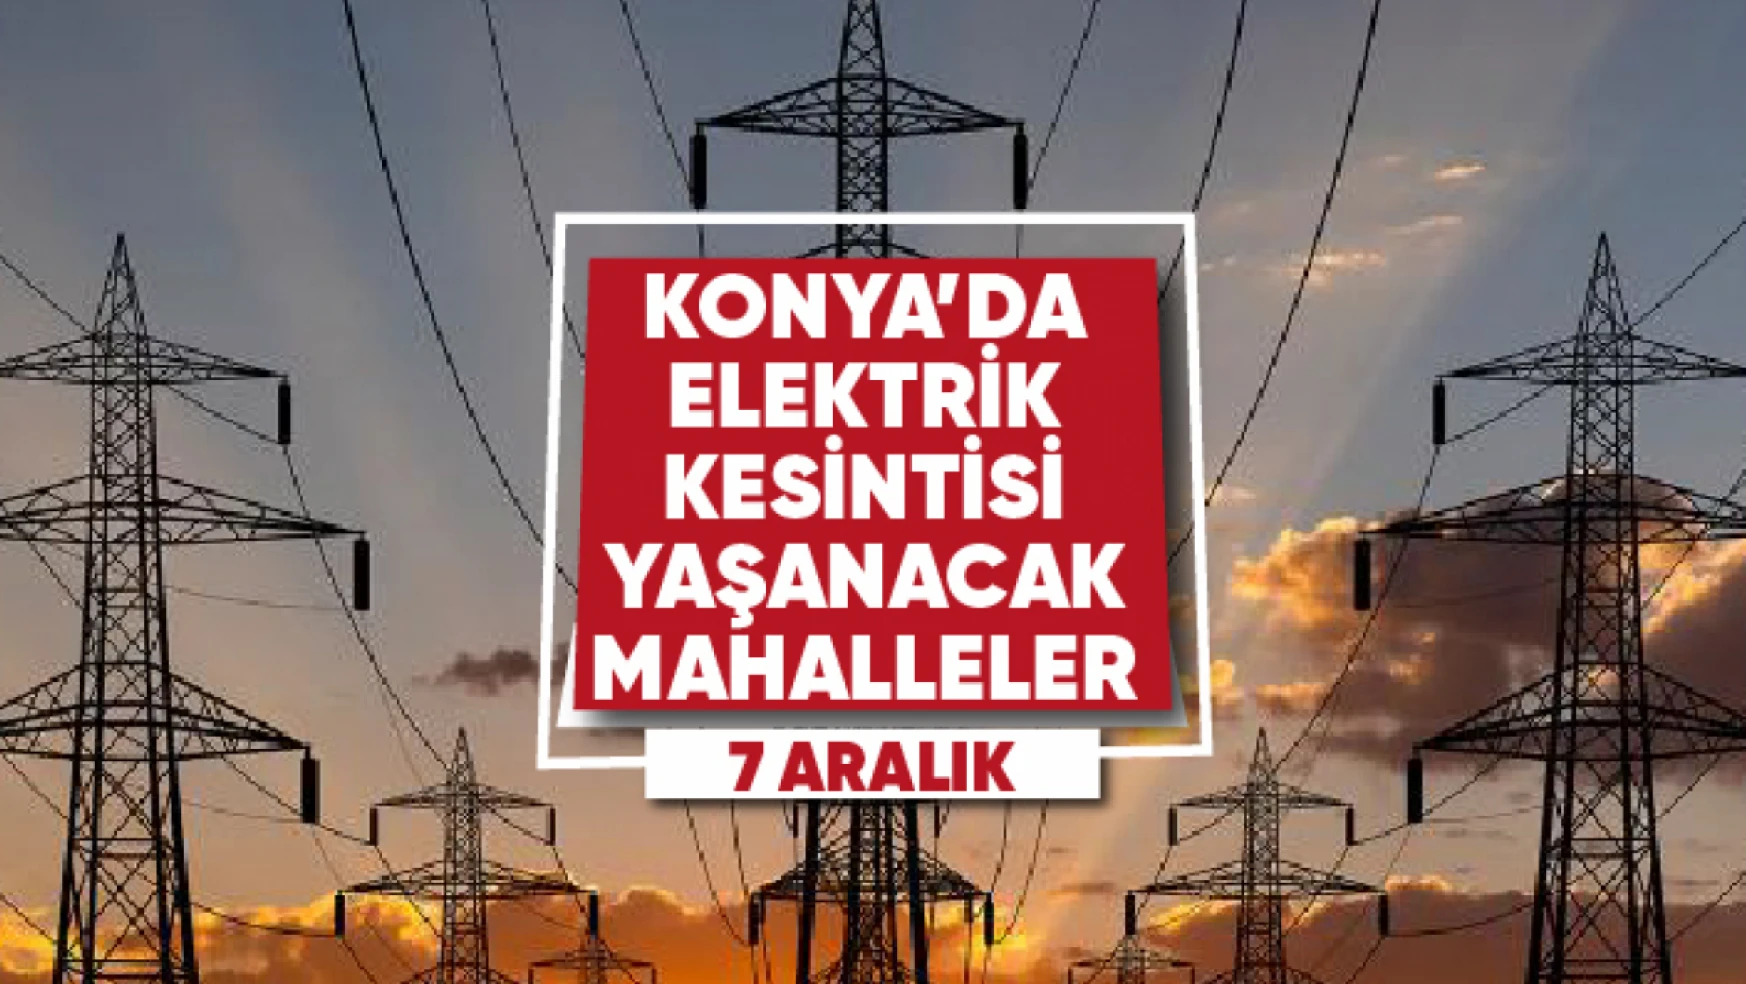 Konya'da elektrik kesintisi yaşanacak mahalle ve sokaklar (7 Aralık)